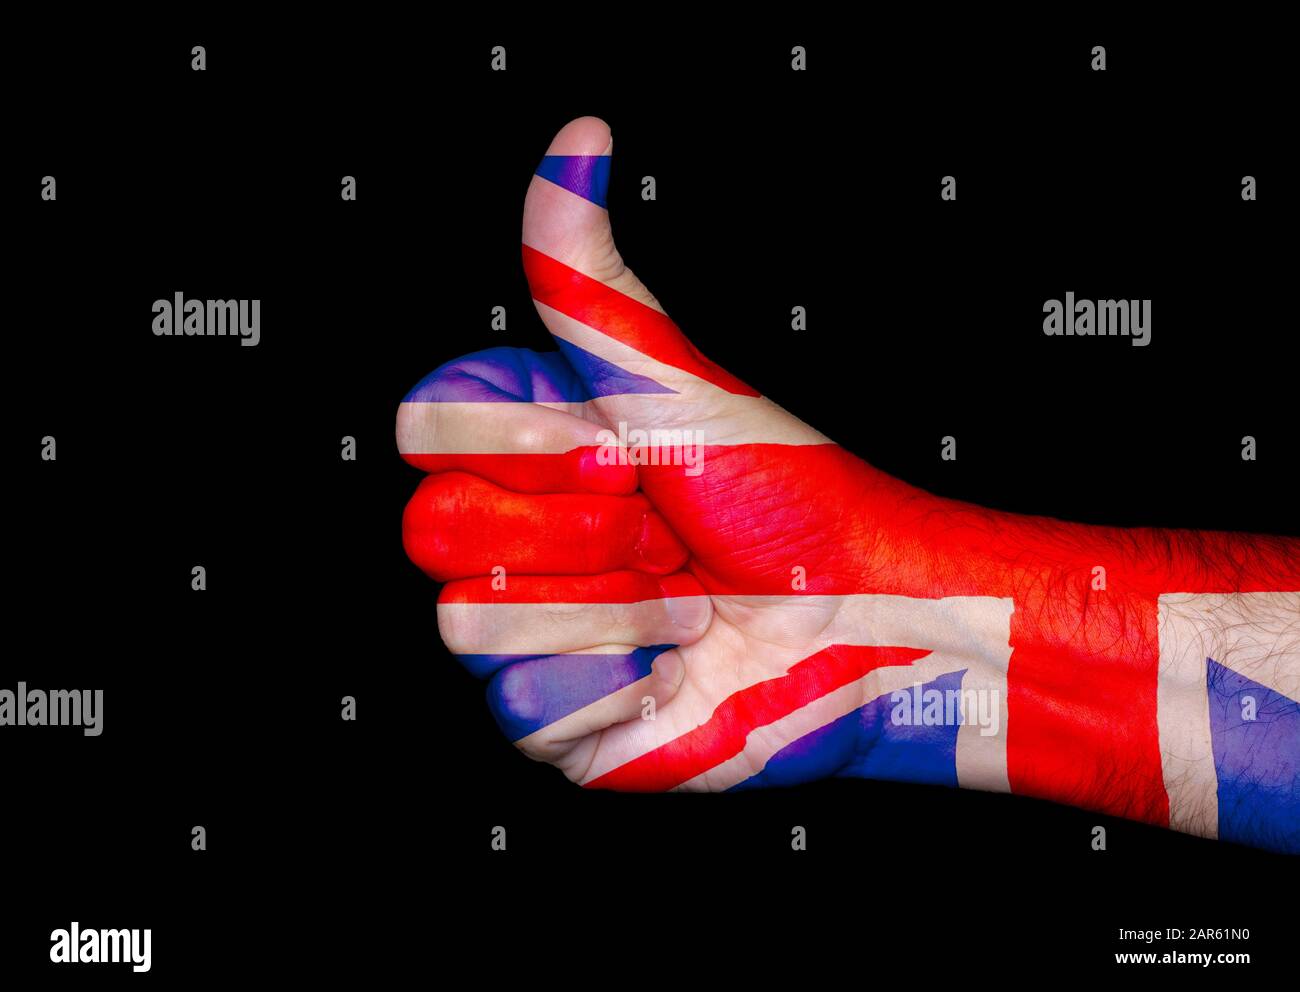 Brexit. Daumen nach oben Geste Ausschnitt aus einer Hand mit Farben der Union Jack Flag of Great Britain & Northern Ireland. Britisches Konzept. Stockfoto